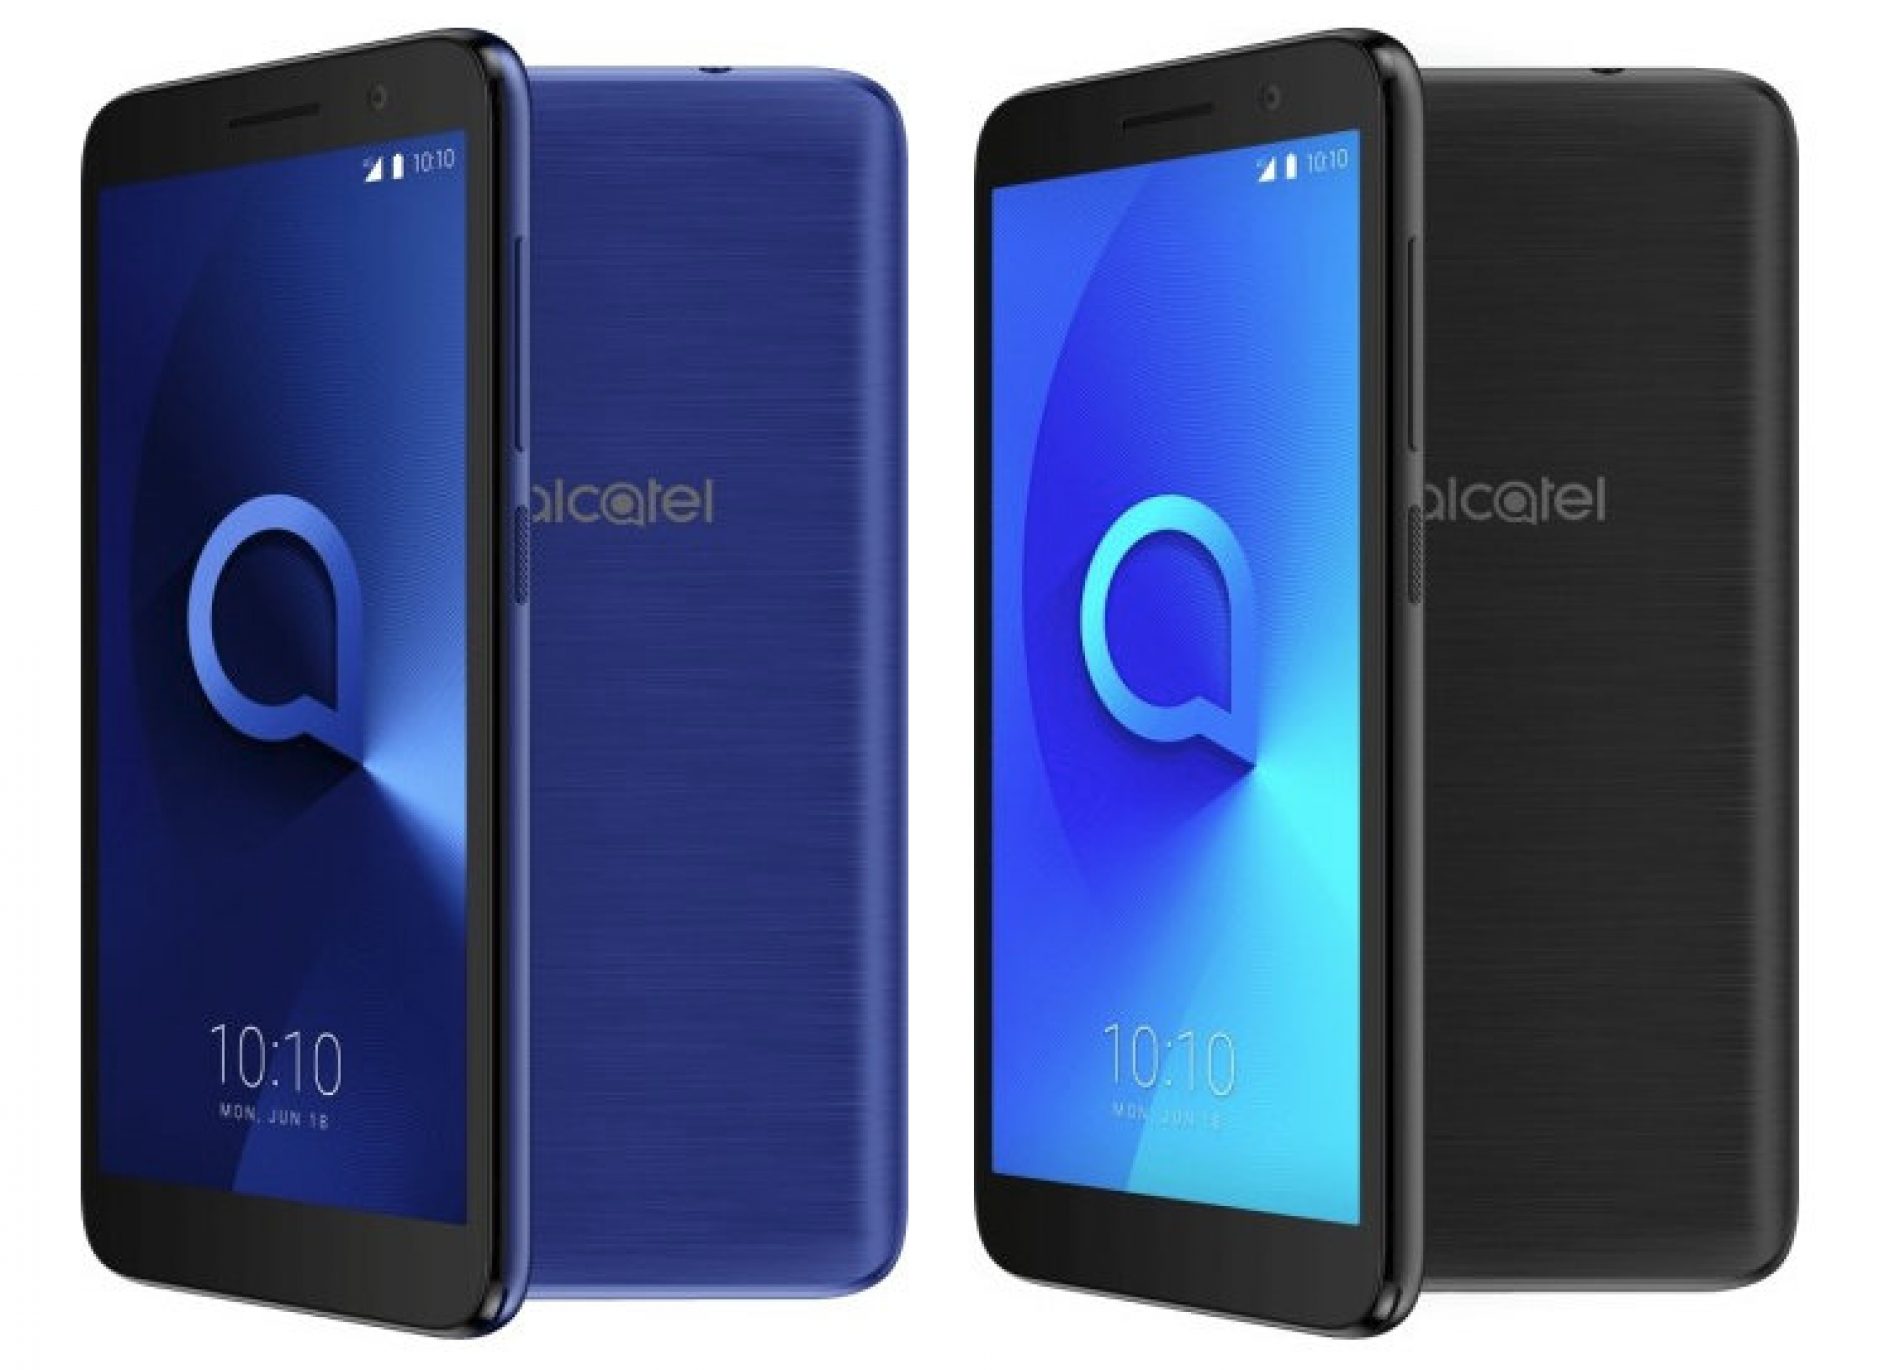 Mütevazi Fiyatı ile Rakipsiz Olması Beklenen Android Go’lu Alcatel 1 Sızdırıldı!